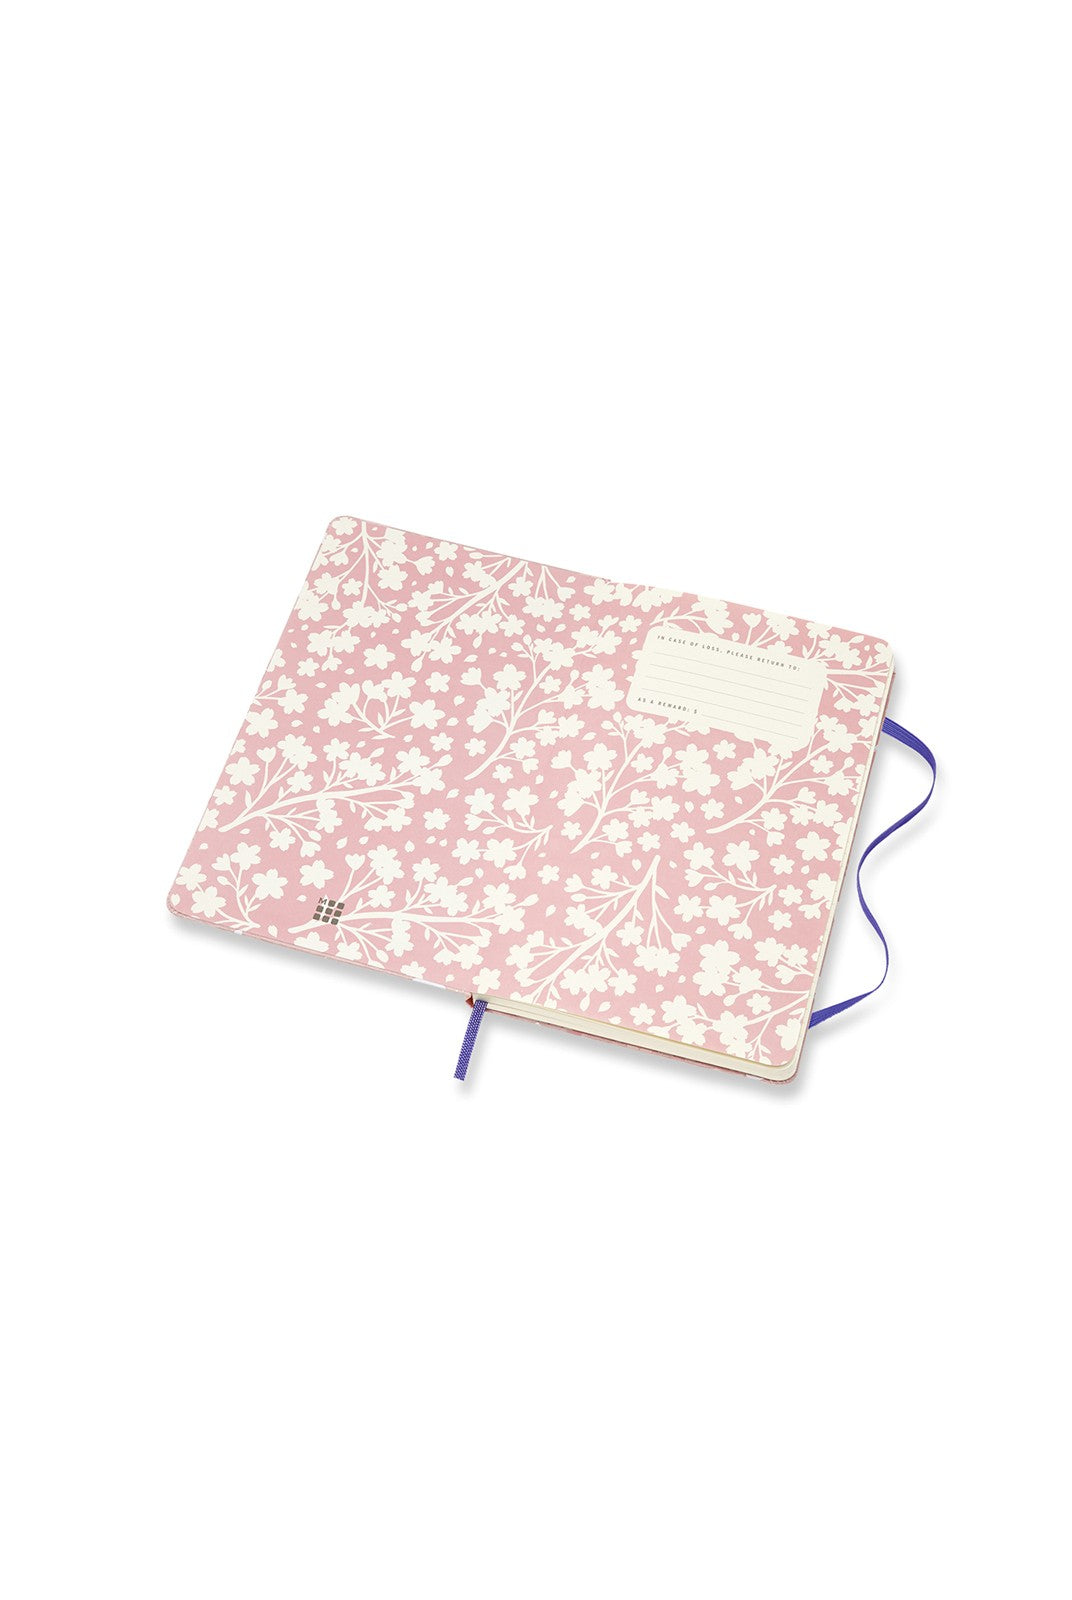 SAKURA Journal  - Limited Edition - Oriental Silk Pink & White - Grierson Studio